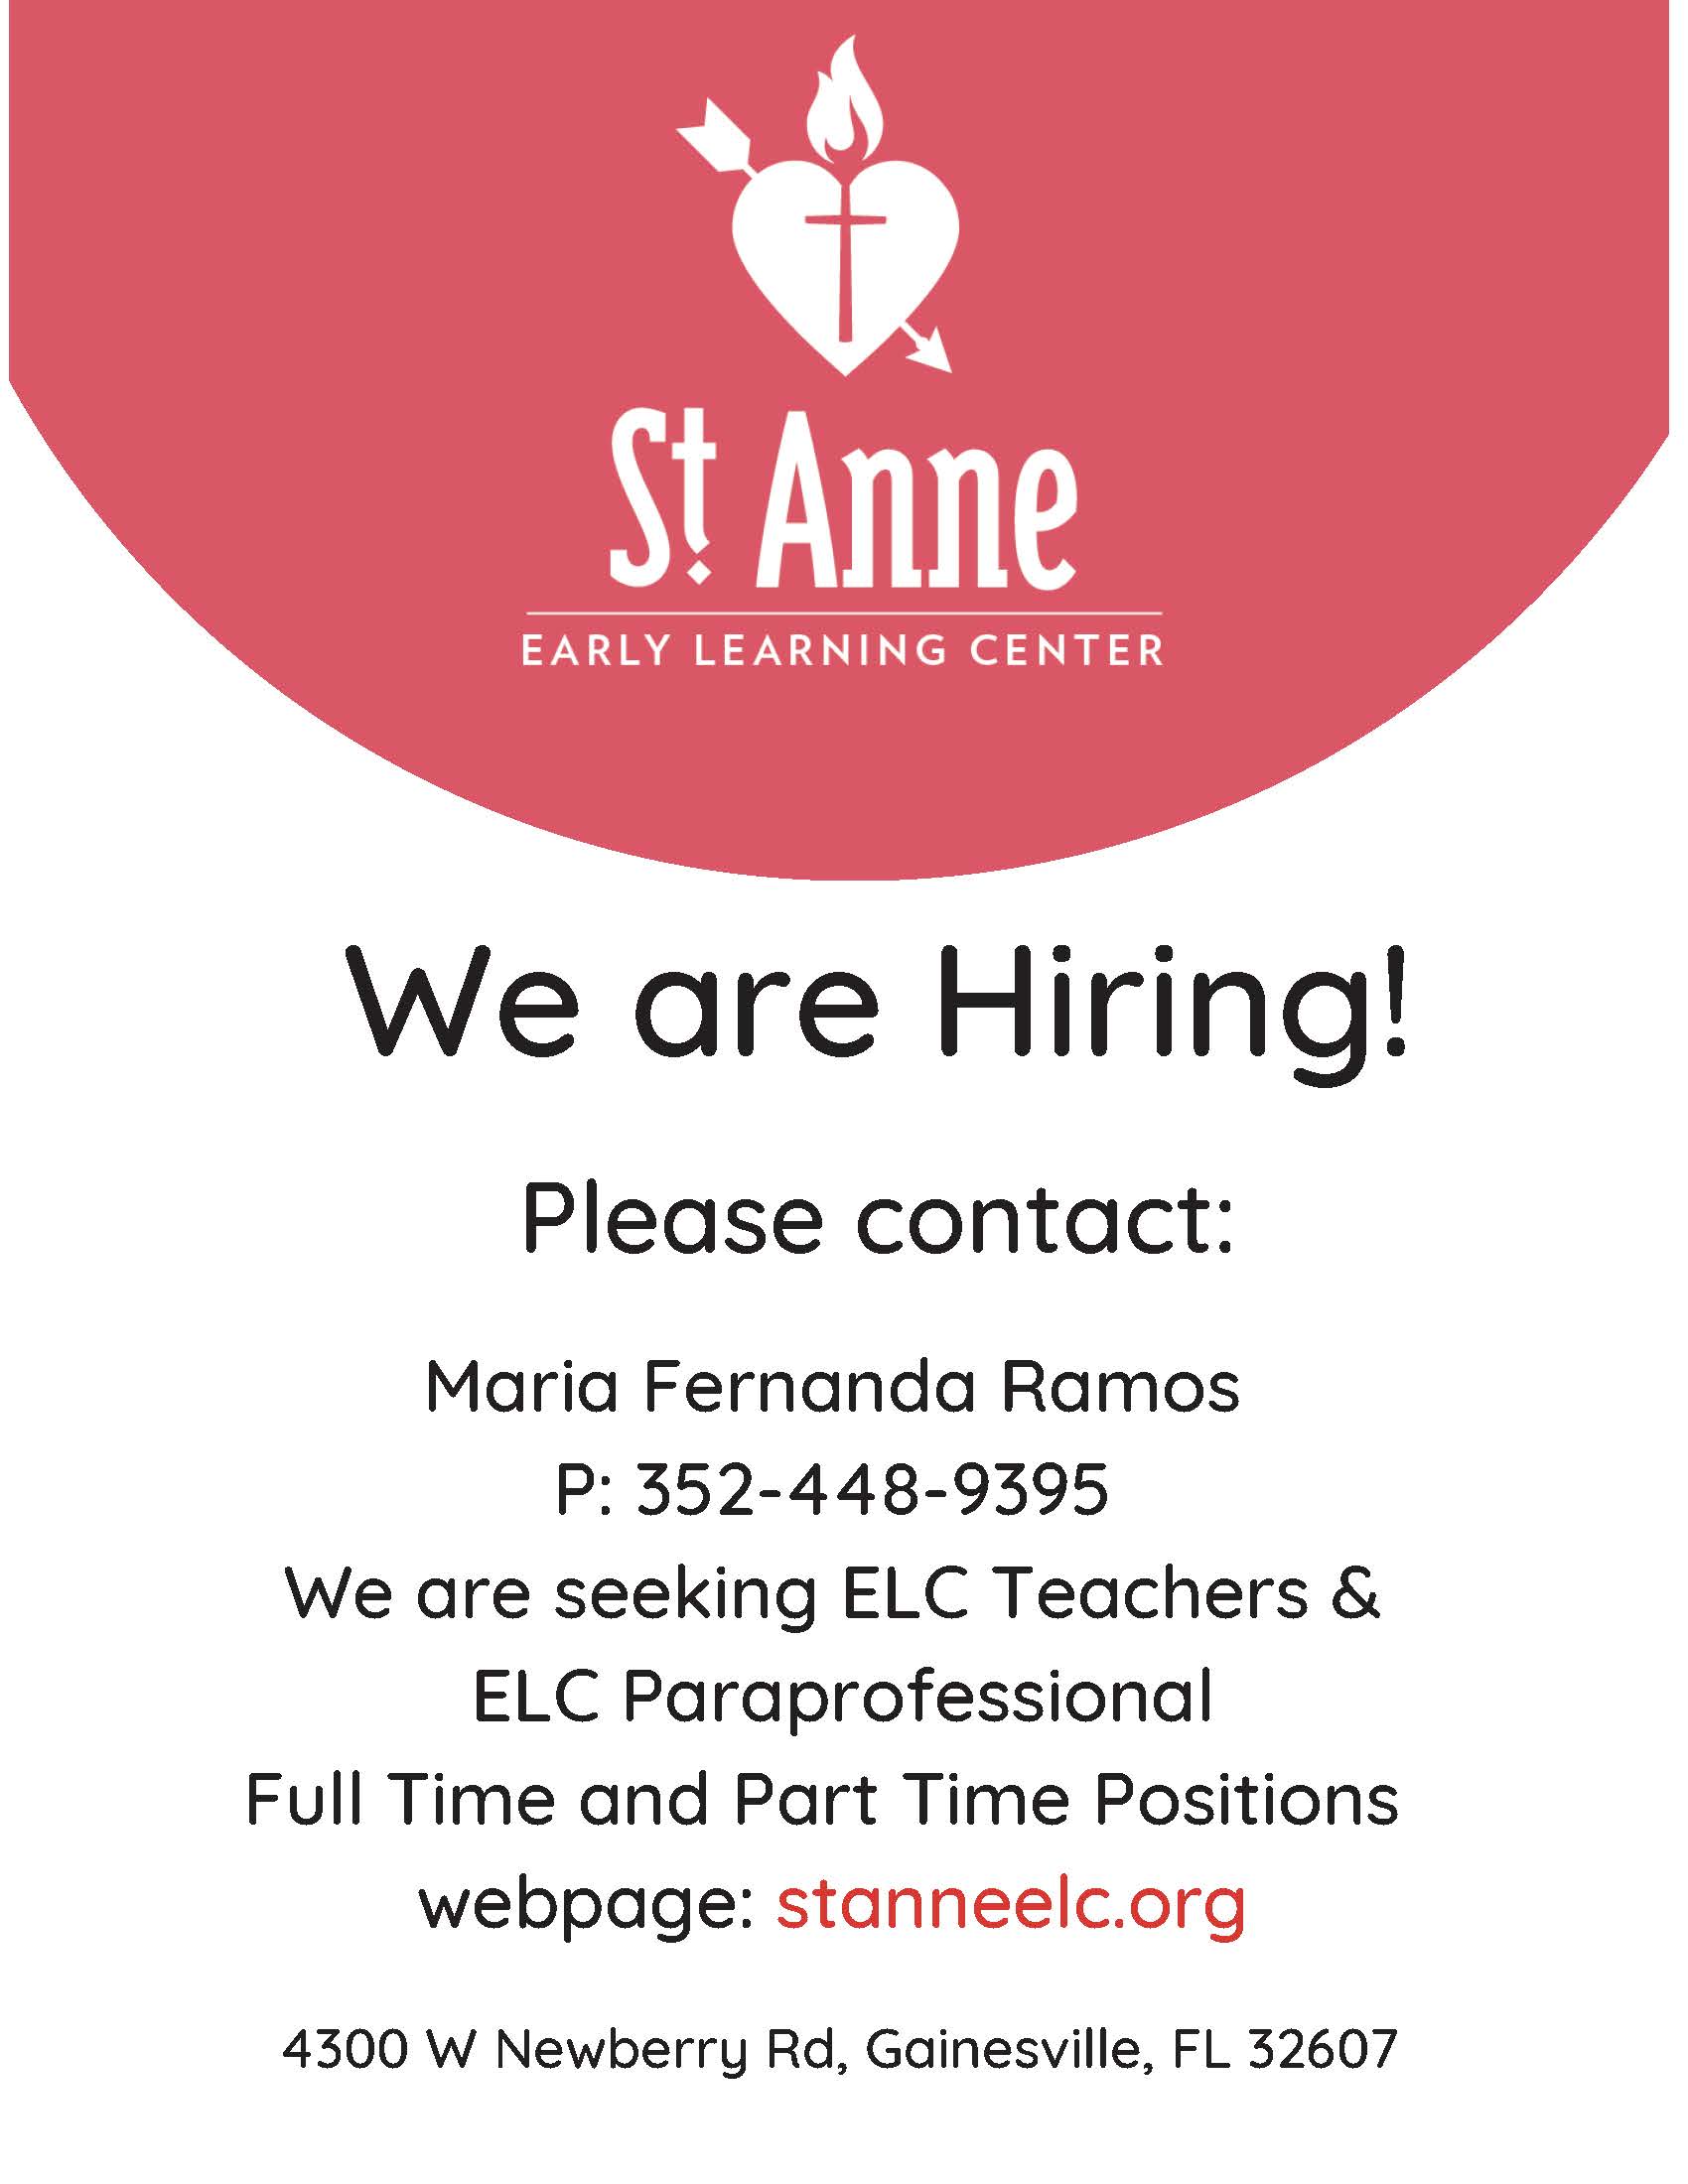 St Anne - Hiring ELC Teachers & ELC Paraprofessional